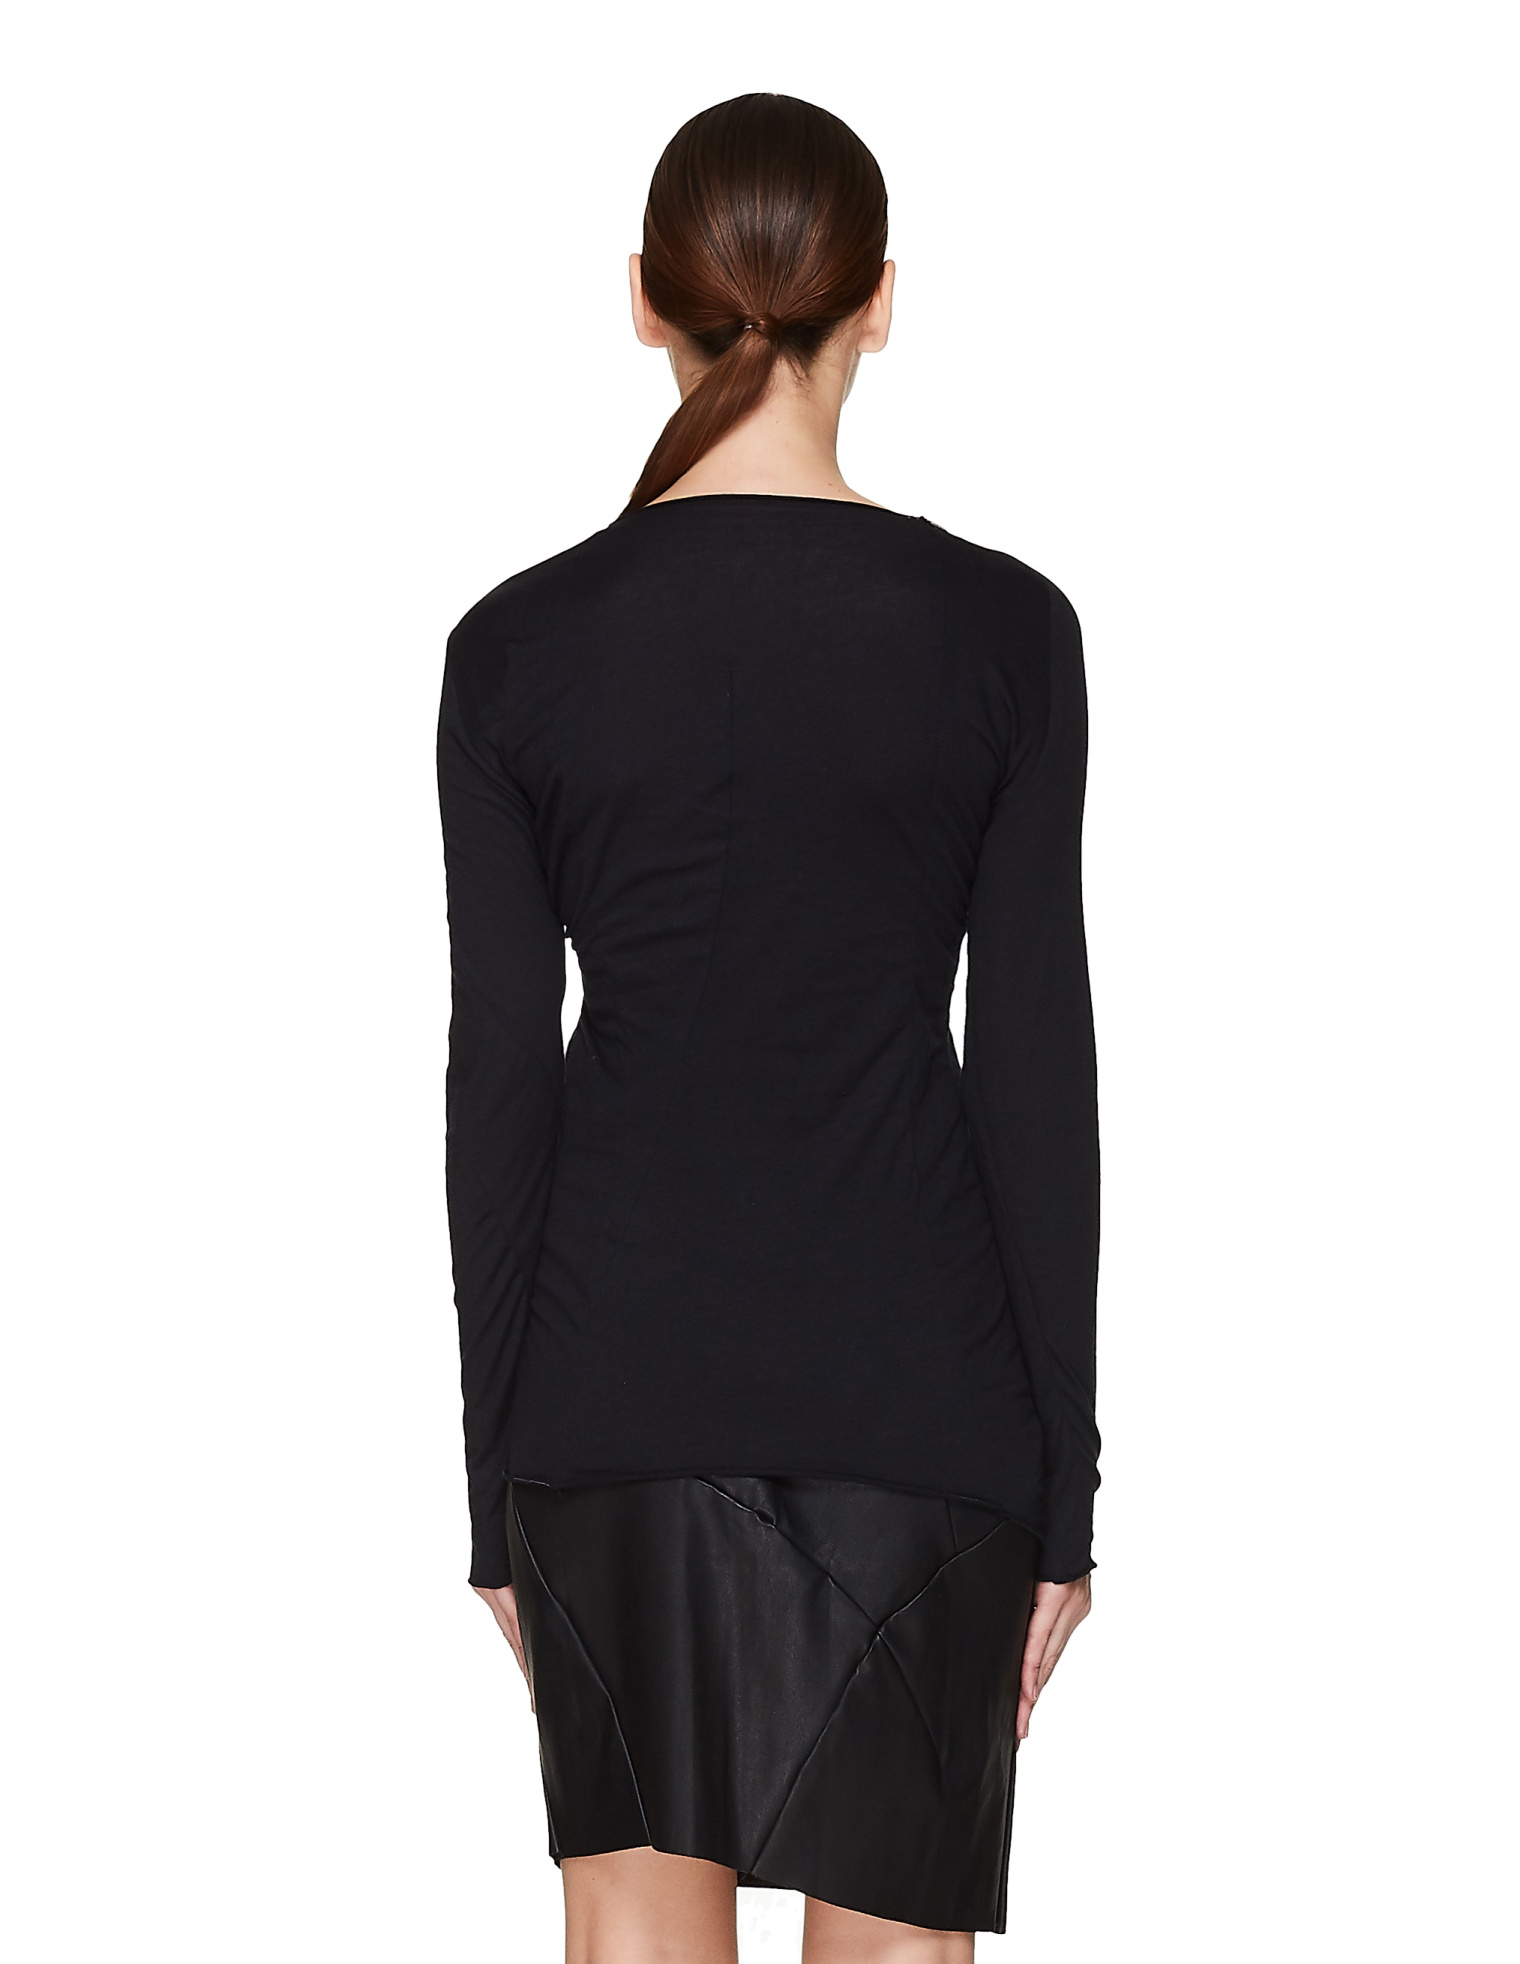 Leon Emanuel Blanck Black Cotton & Cashmere L/S T-Shirt